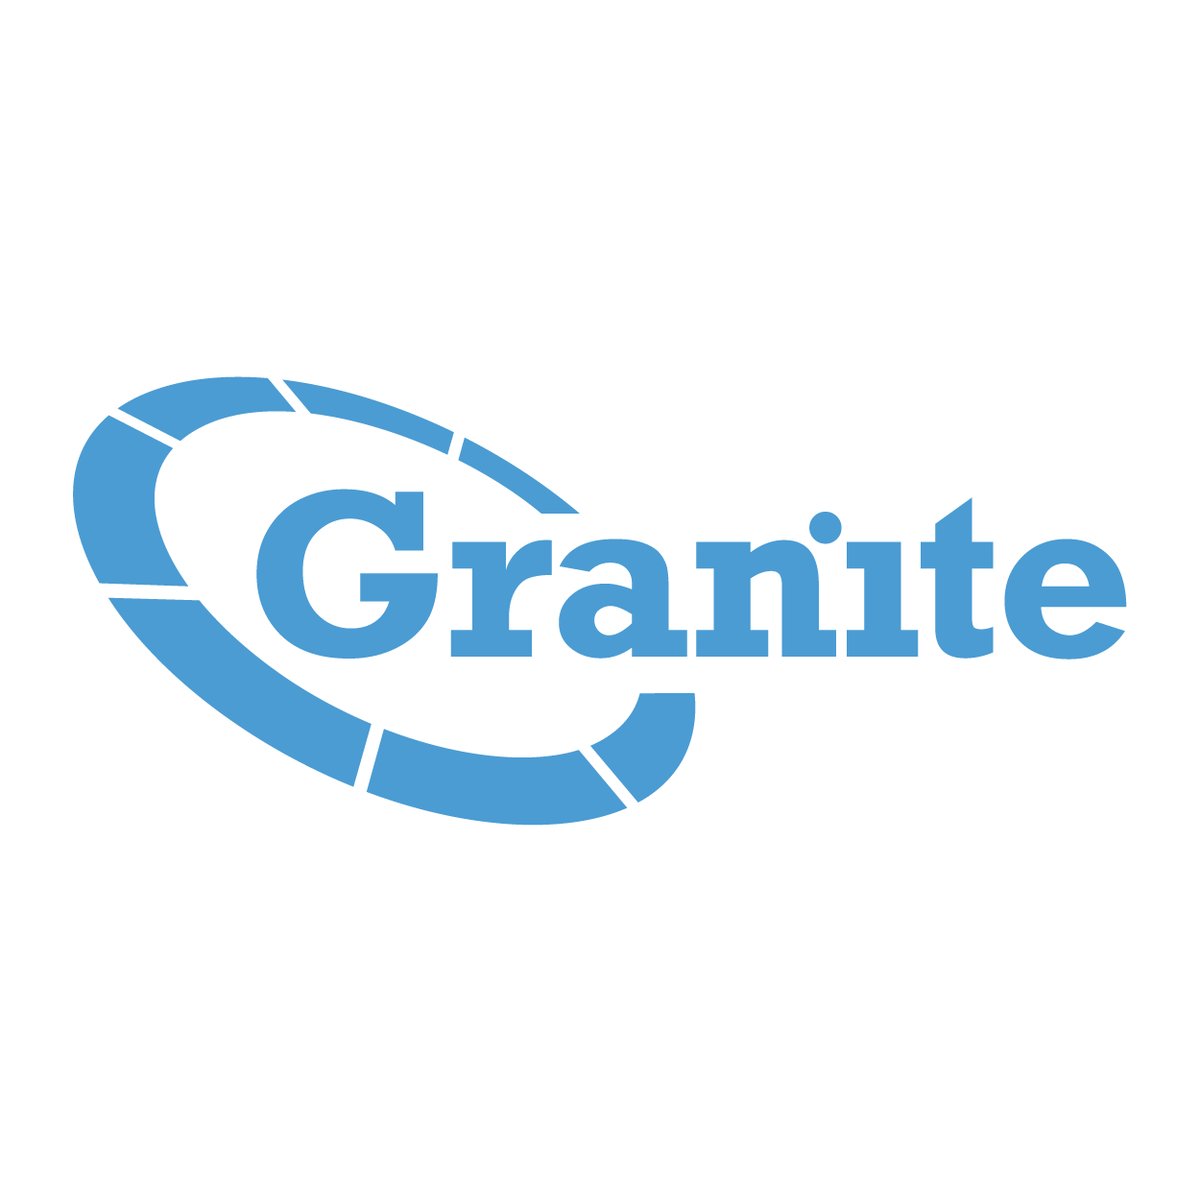 Granite-01